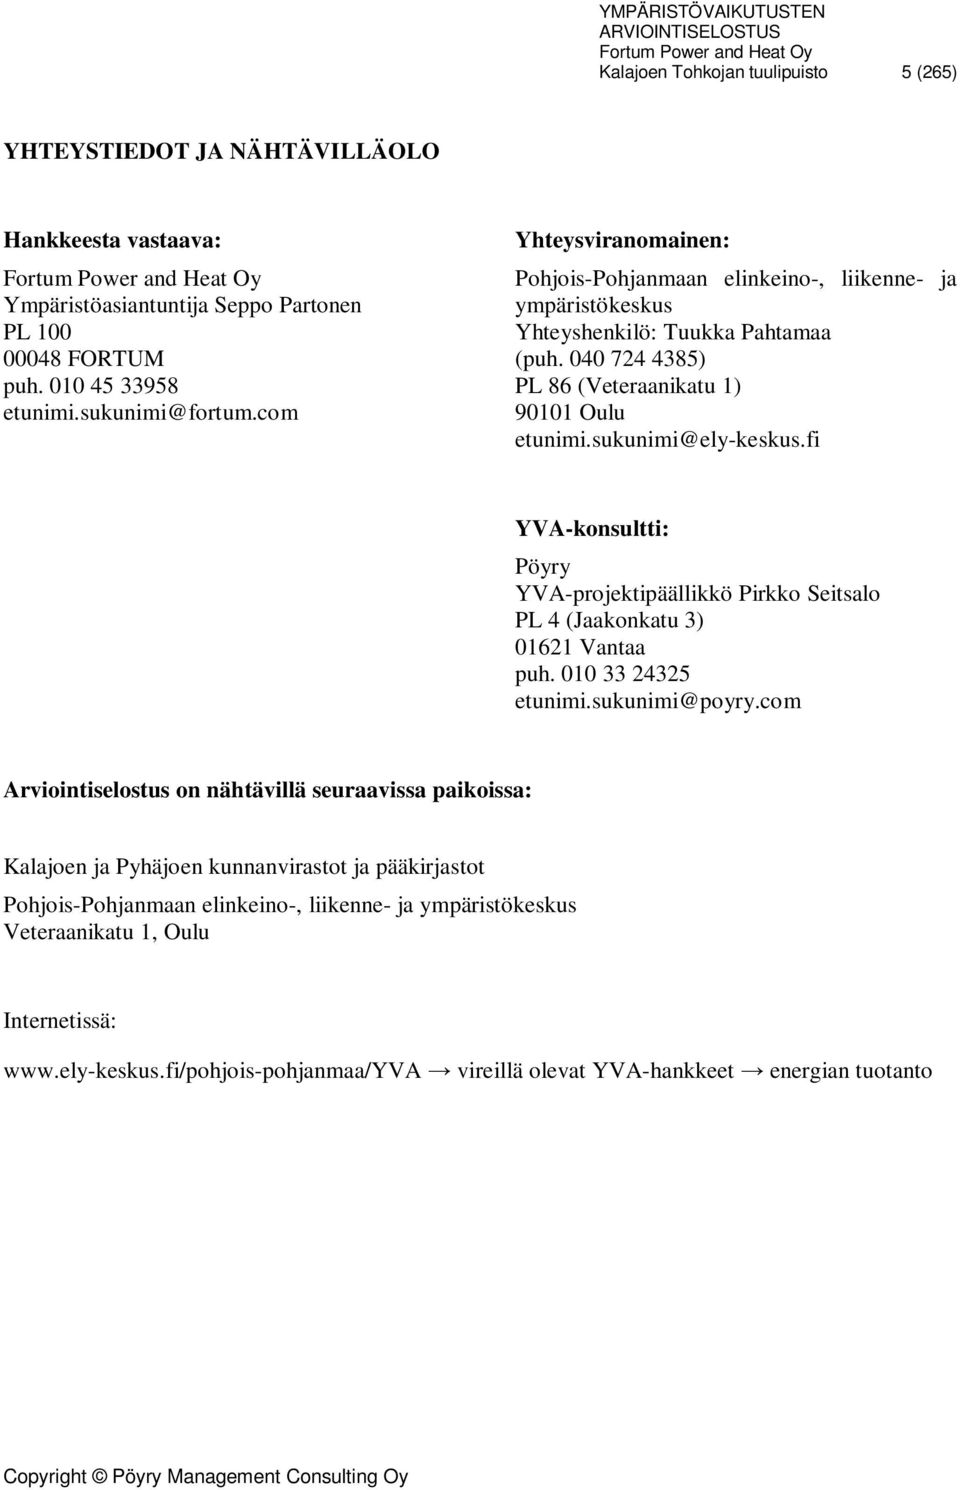 fi YVA-konsultti: Pöyry YVA-projektipäällikkö Pirkko Seitsalo PL 4 (Jaakonkatu 3) 01621 Vantaa puh. 010 33 24325 etunimi.sukunimi@poyry.